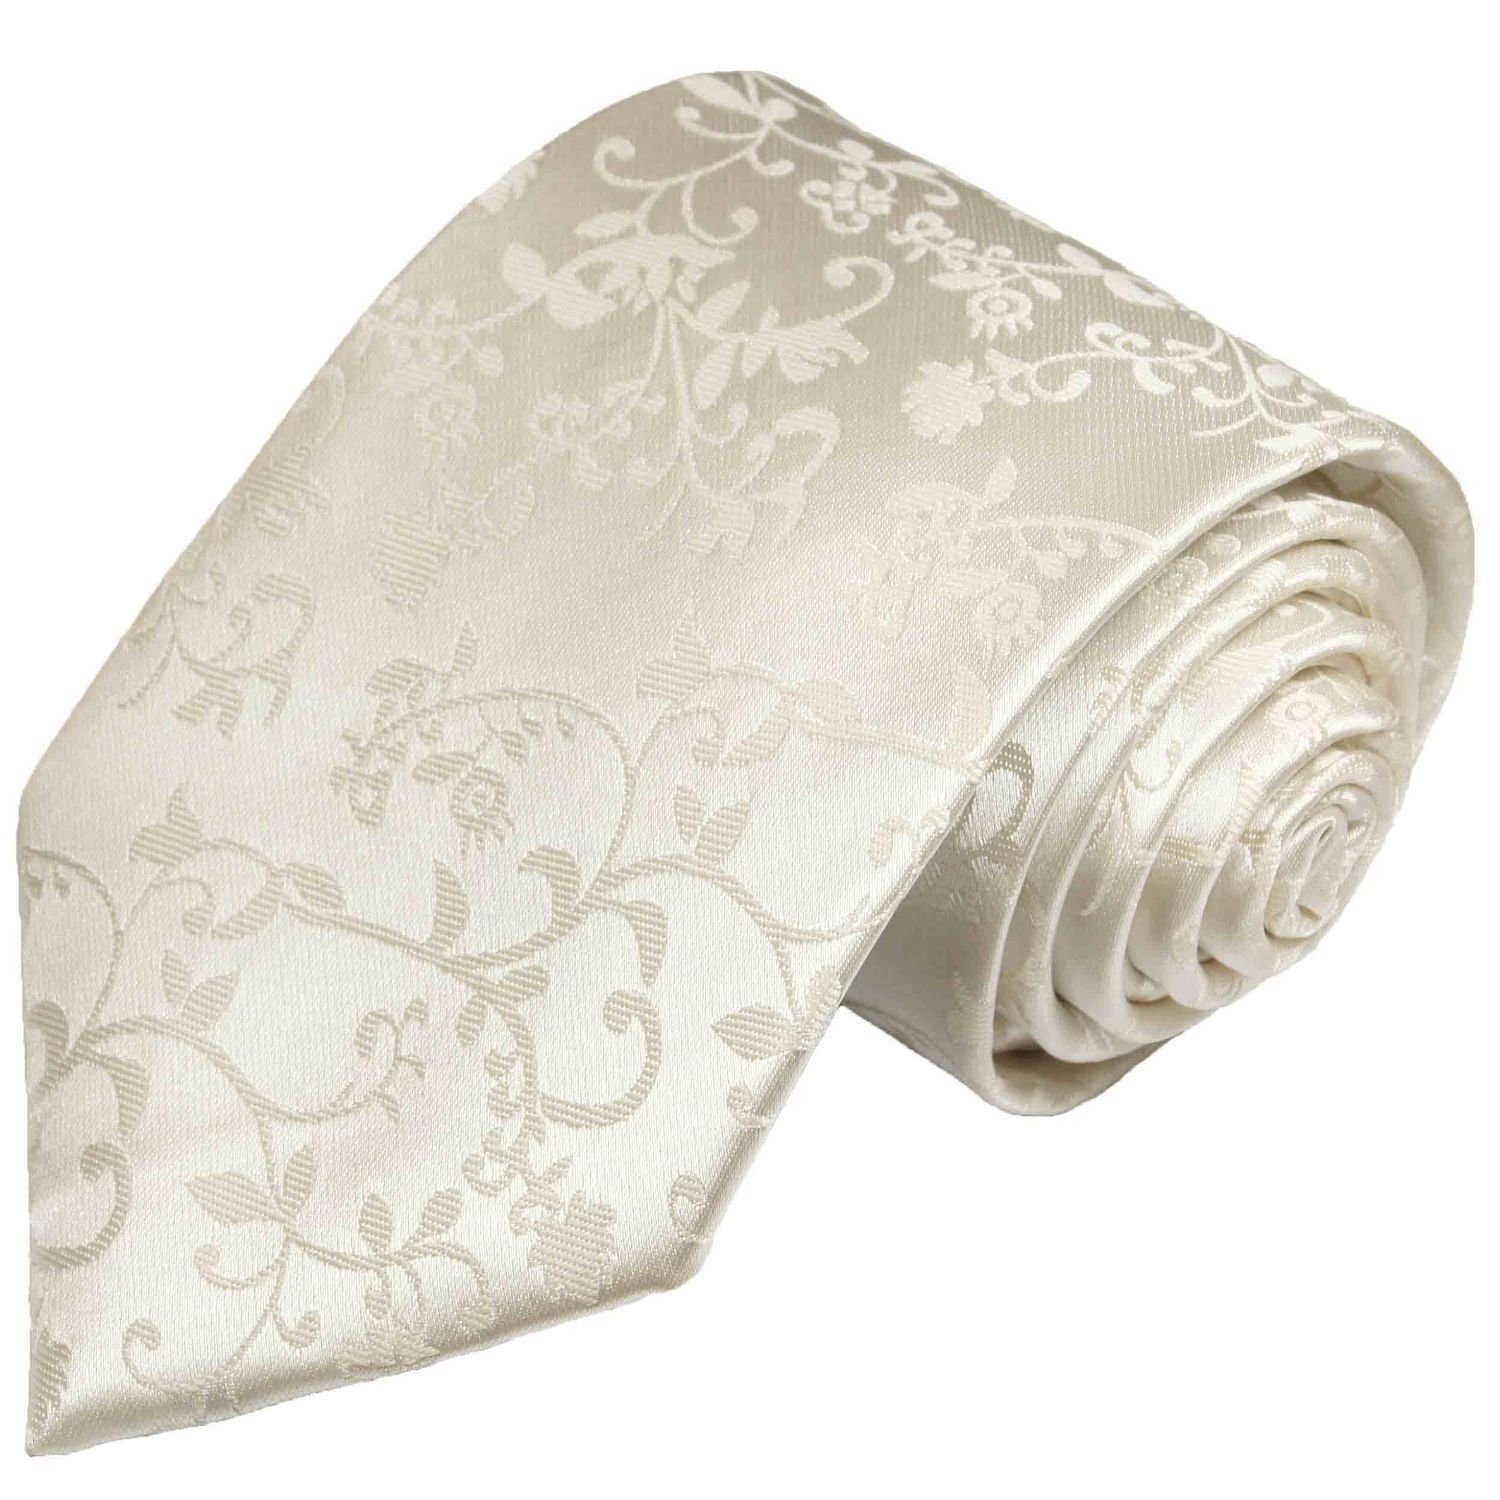 Paul Malone Krawatte Herren Hochzeitskrawatte floral 100% Seide Bräutigam Hochzeit Schlips Schmal (6cm), ivory 930